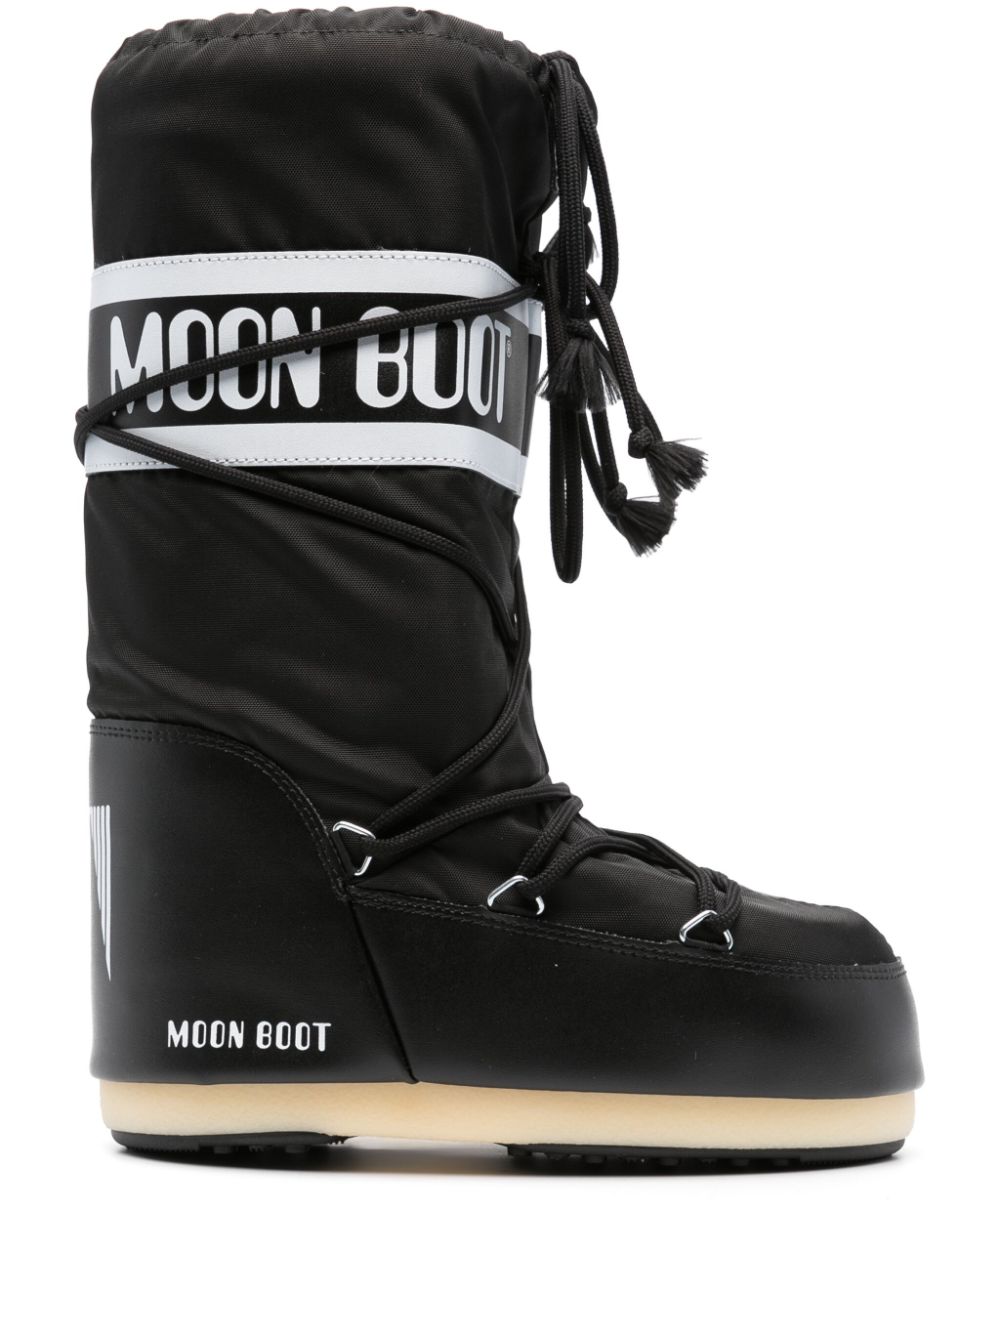 Image 1 of Moon Boot bottines Icon waterproof